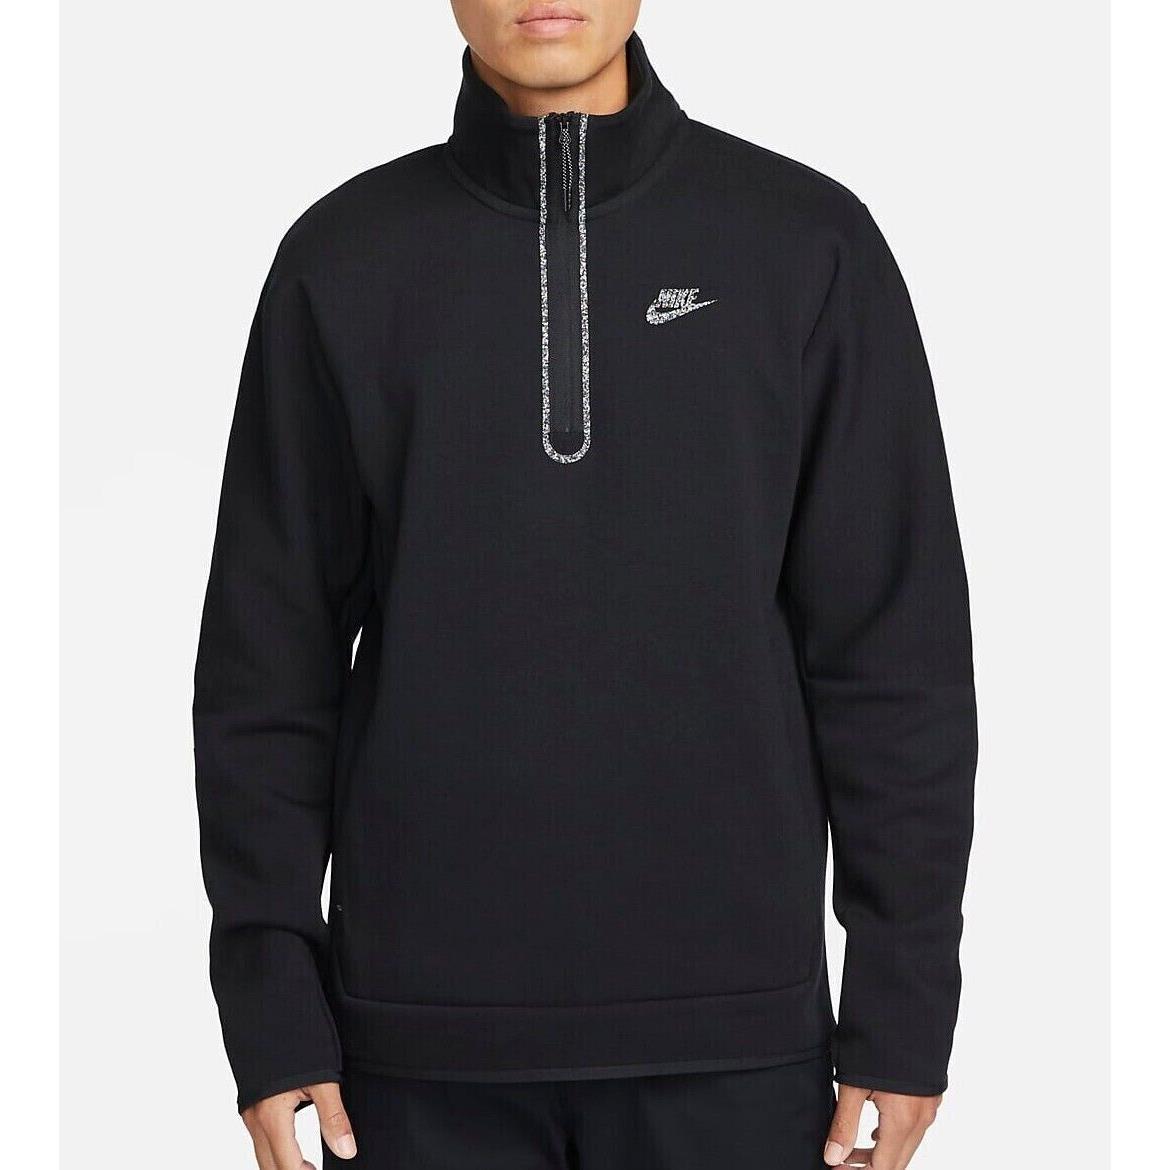 Nike Tech Fleece 1/2 Zip Pullover Top Sweatshirt Jacket DQ4314 Black Medium